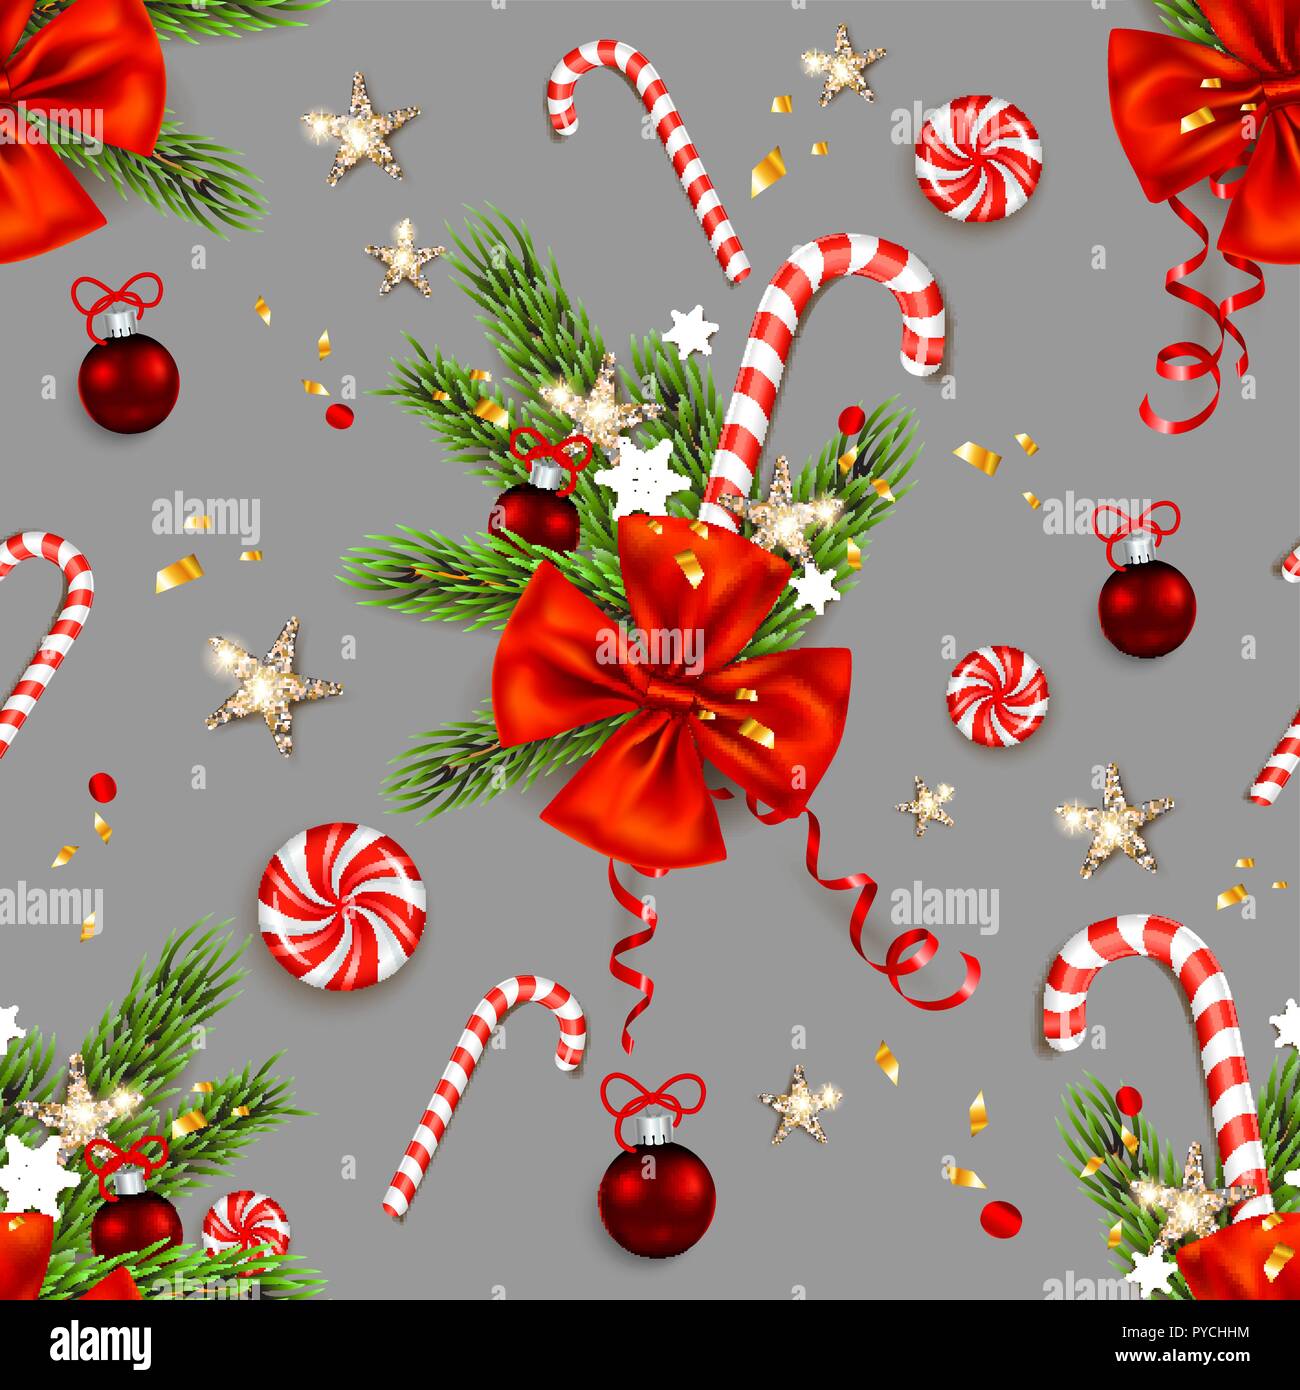 Winterurlaub nahtlose Muster. Festliche Weihnachten Symbole Tapete. Weihnachtsbaum, Band, Zuckerstange, Sterne, Kugeln, Schneeflocken sich wiederholenden Einrichtung Stock Vektor